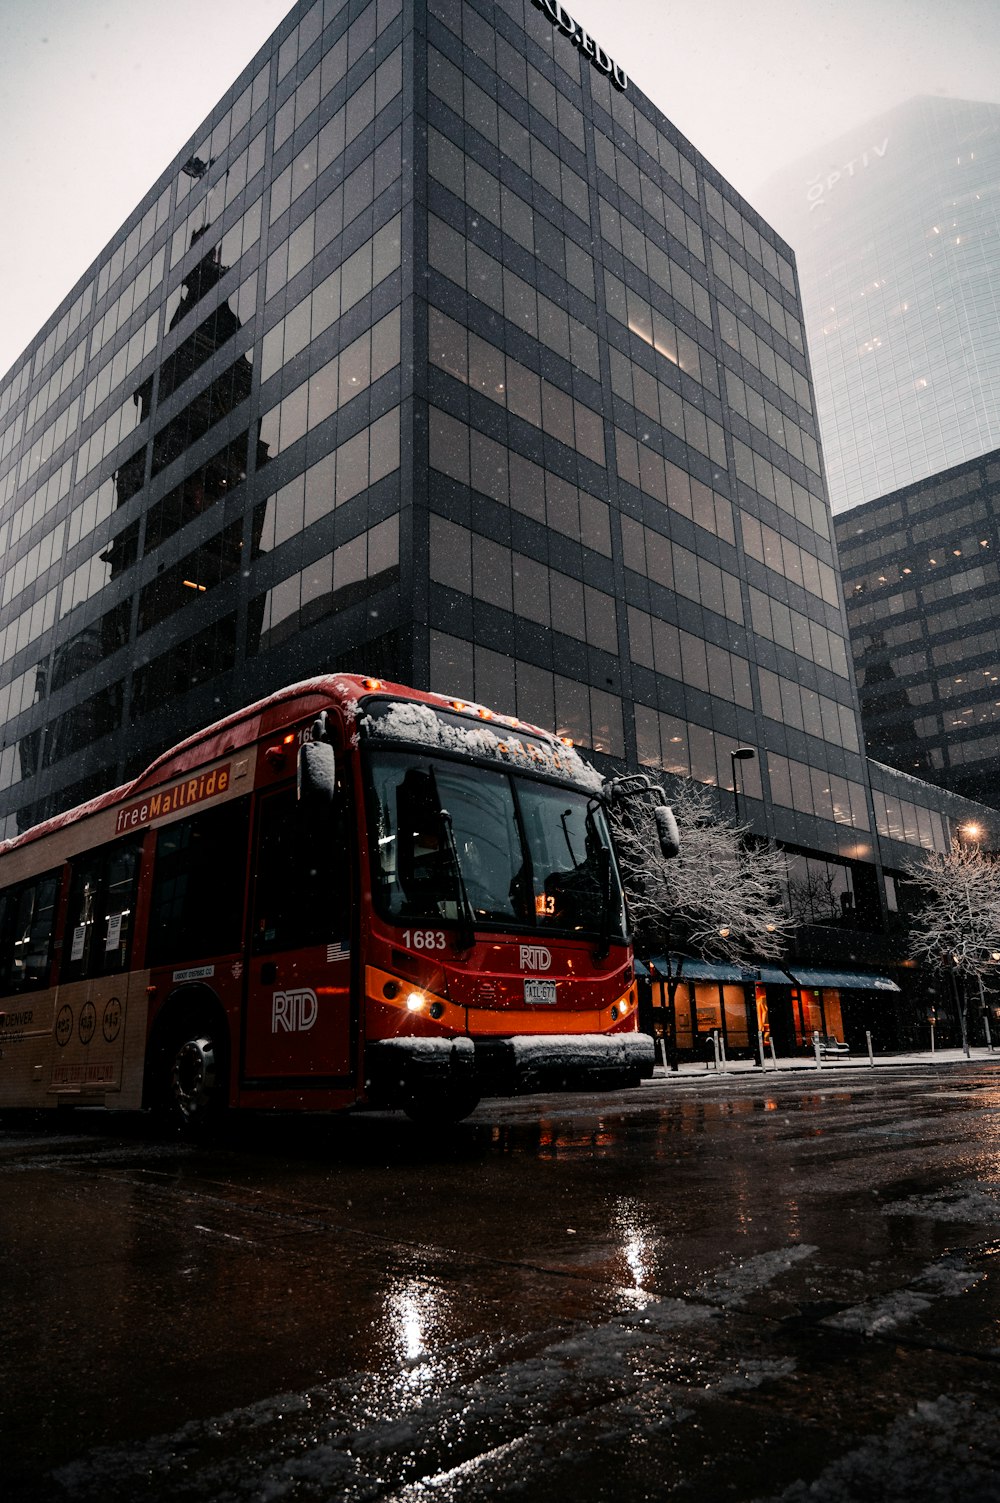 Bus rouge à impériale sur la route près d’un bâtiment pendant la journée